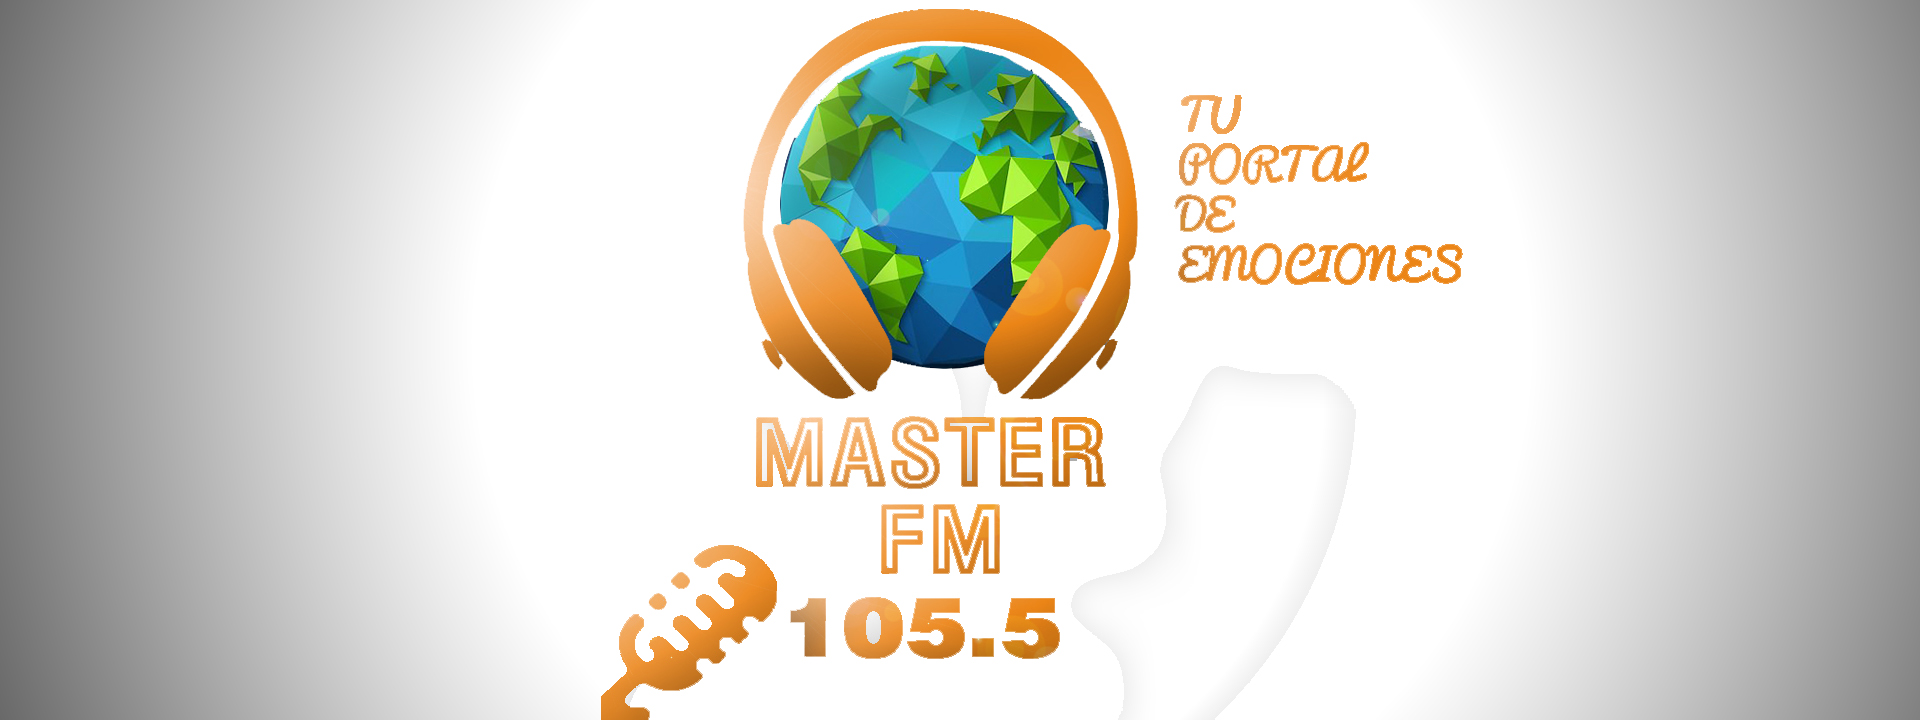 FELICITACIONES!!! – Radio Master 105.5 FM en su aniversario…